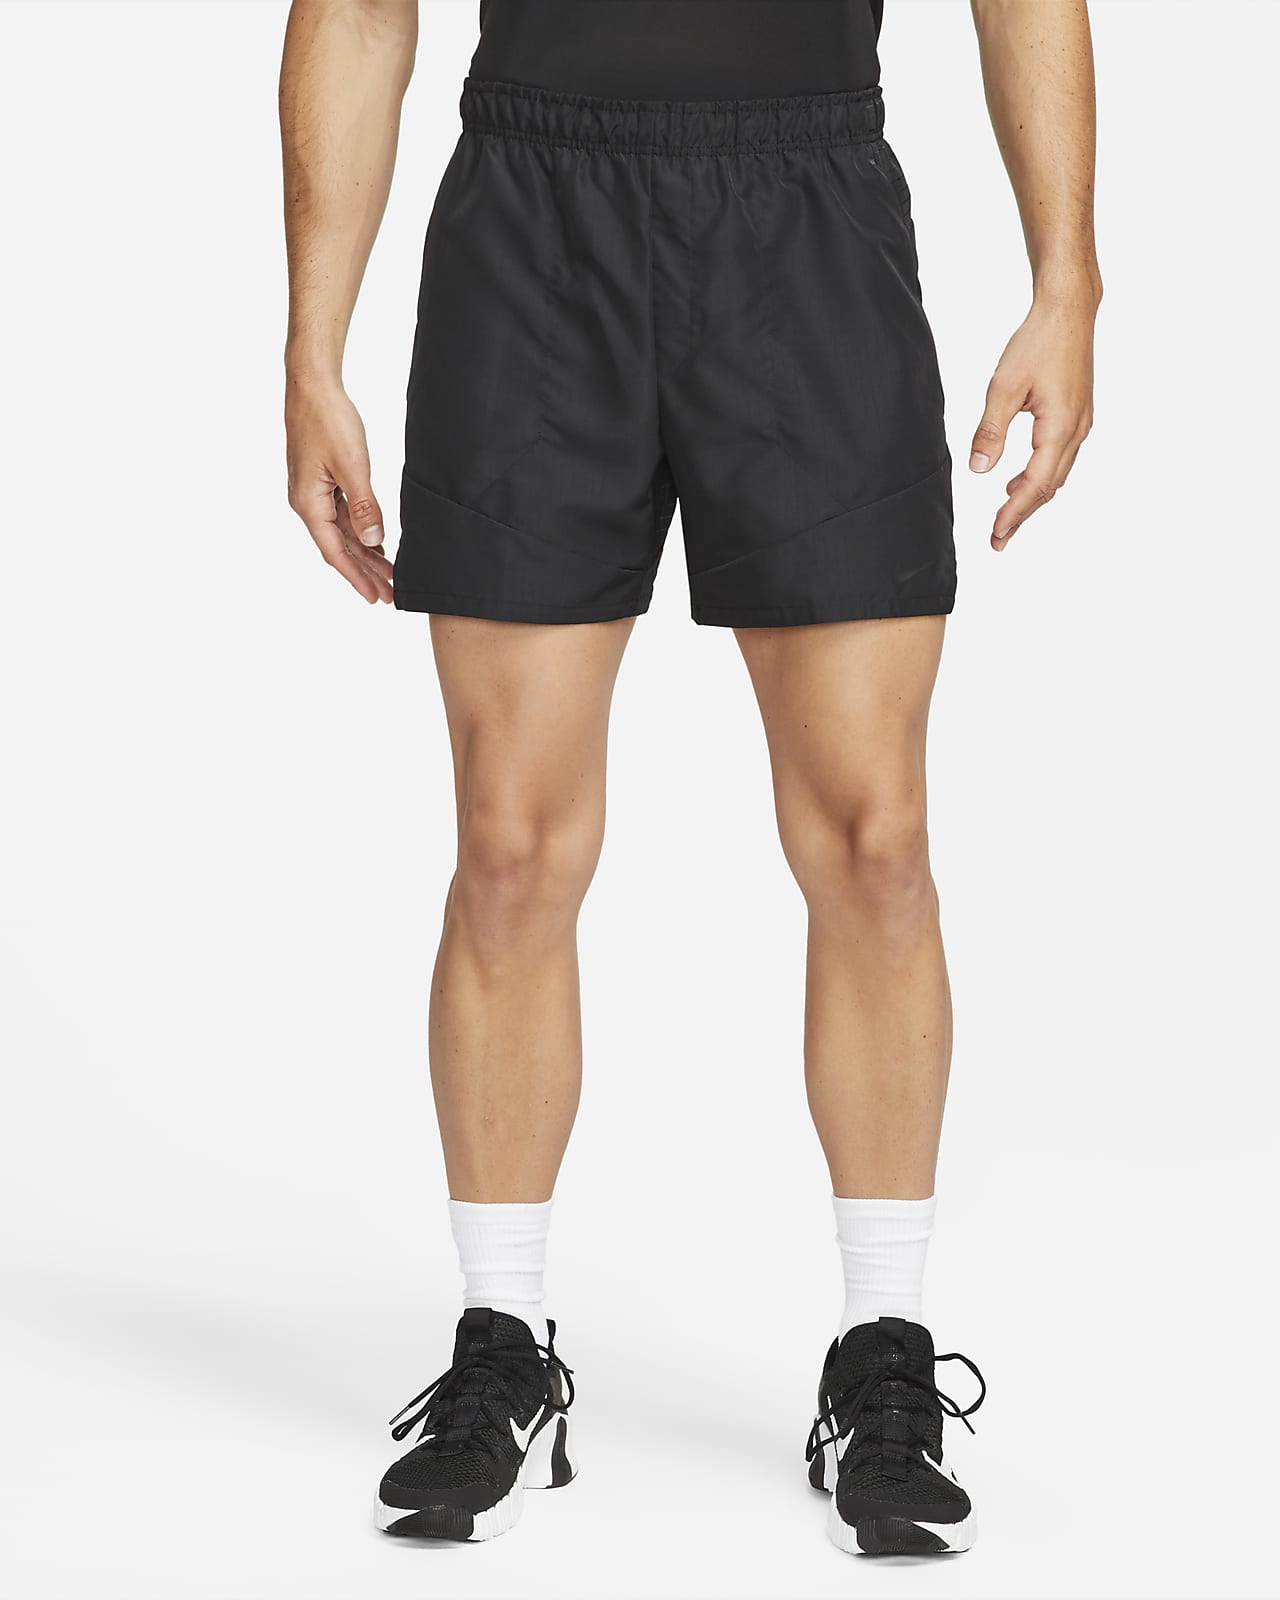 Nike Dri-FIT ADV A.P.S. Shorts versatili non foderati 15 cm – Uomo